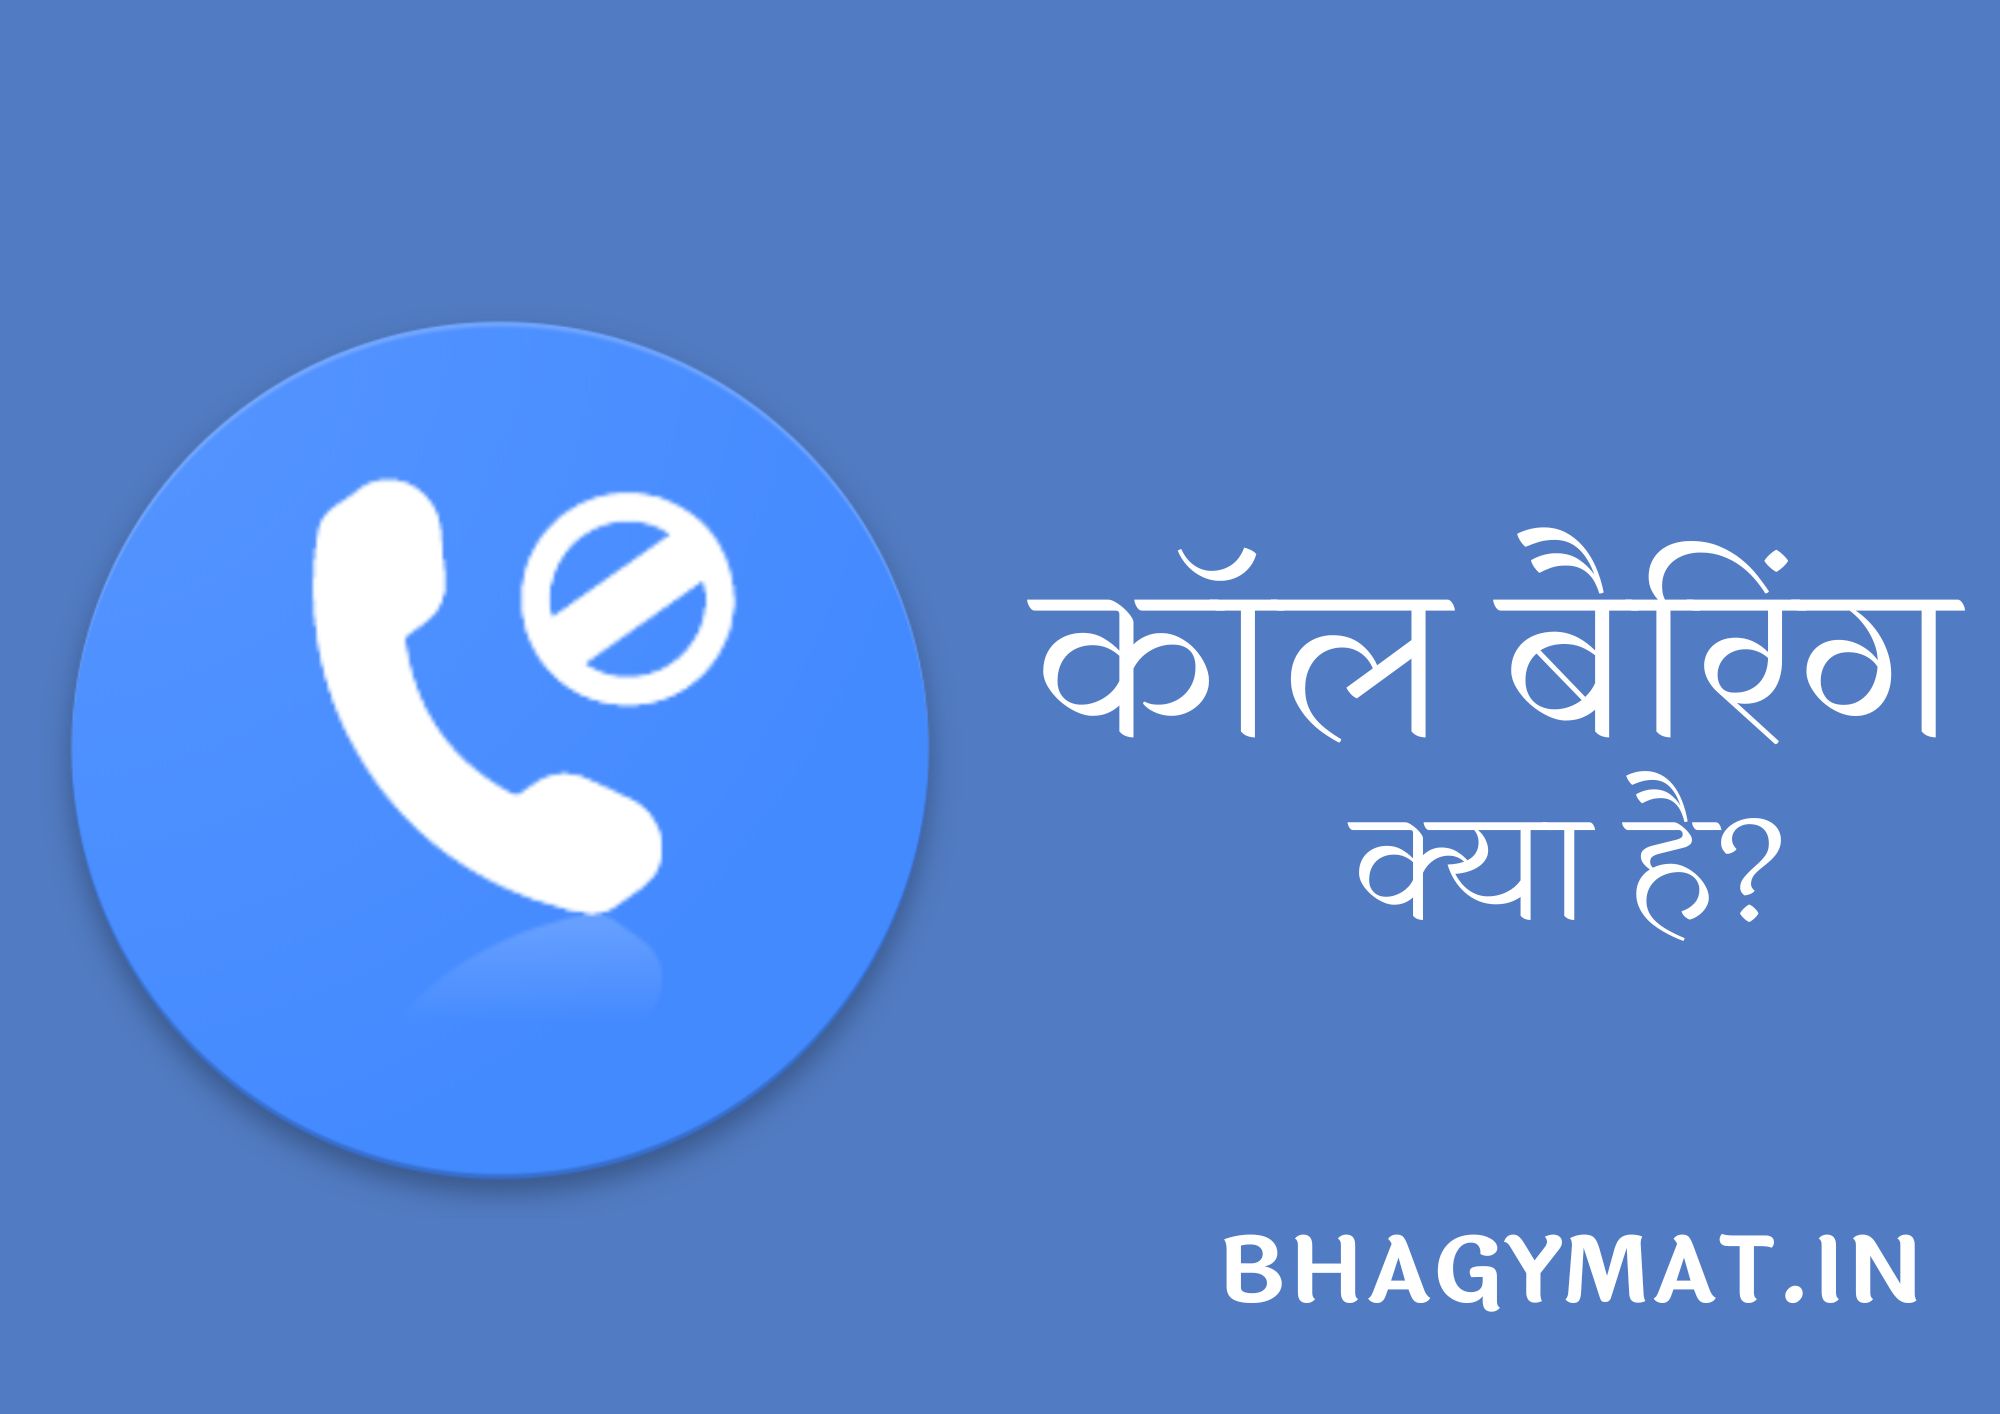 कॉल बैरिंग क्या है? कॉल बैरिंग का मतलब - Call Barring Meaning In Hindi